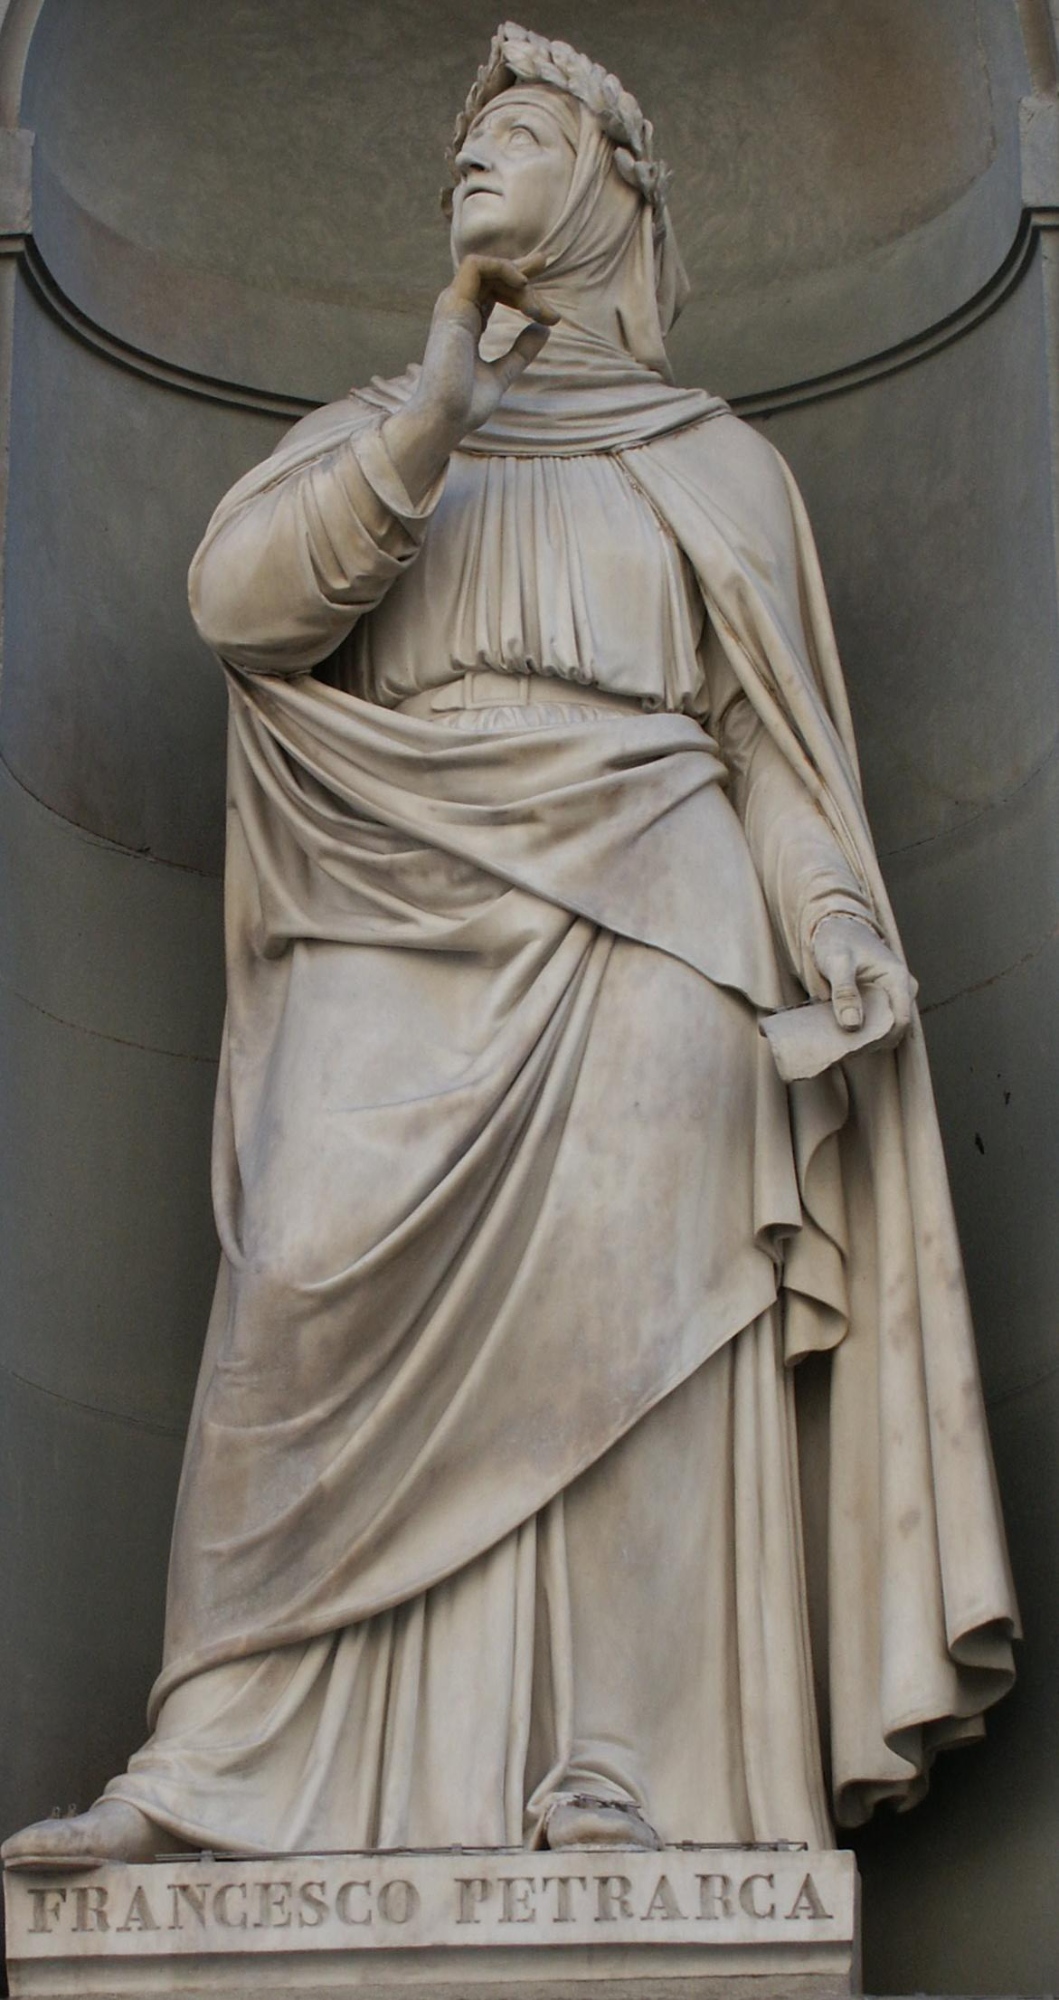 La statua di Francesco Petrarca sulla facciata del Palazzo degli Uffizi